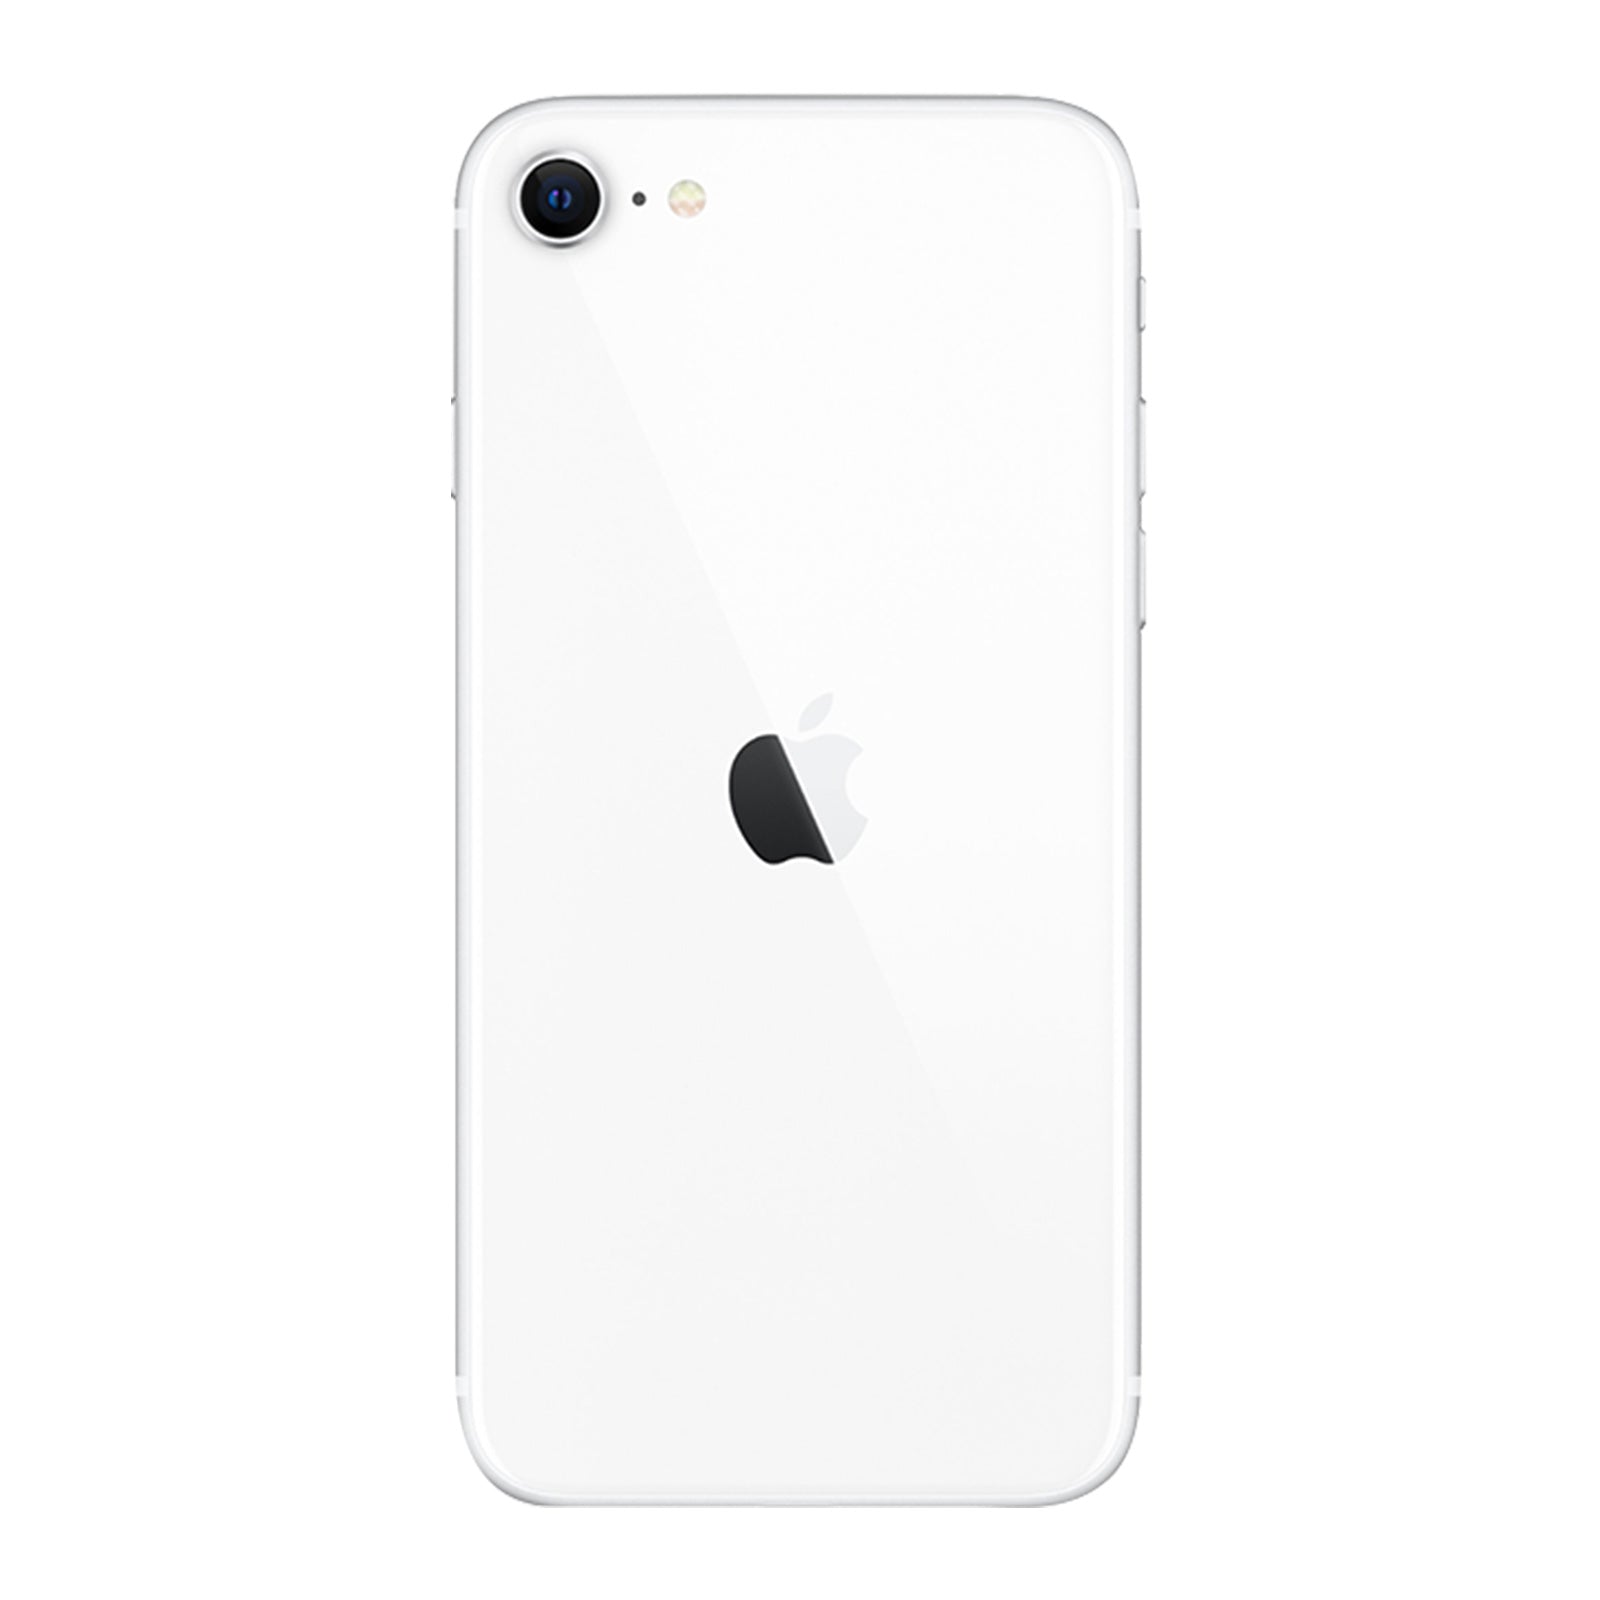 Apple iPhone SE 2nd Gen 64GB White Pristine T-Mobile